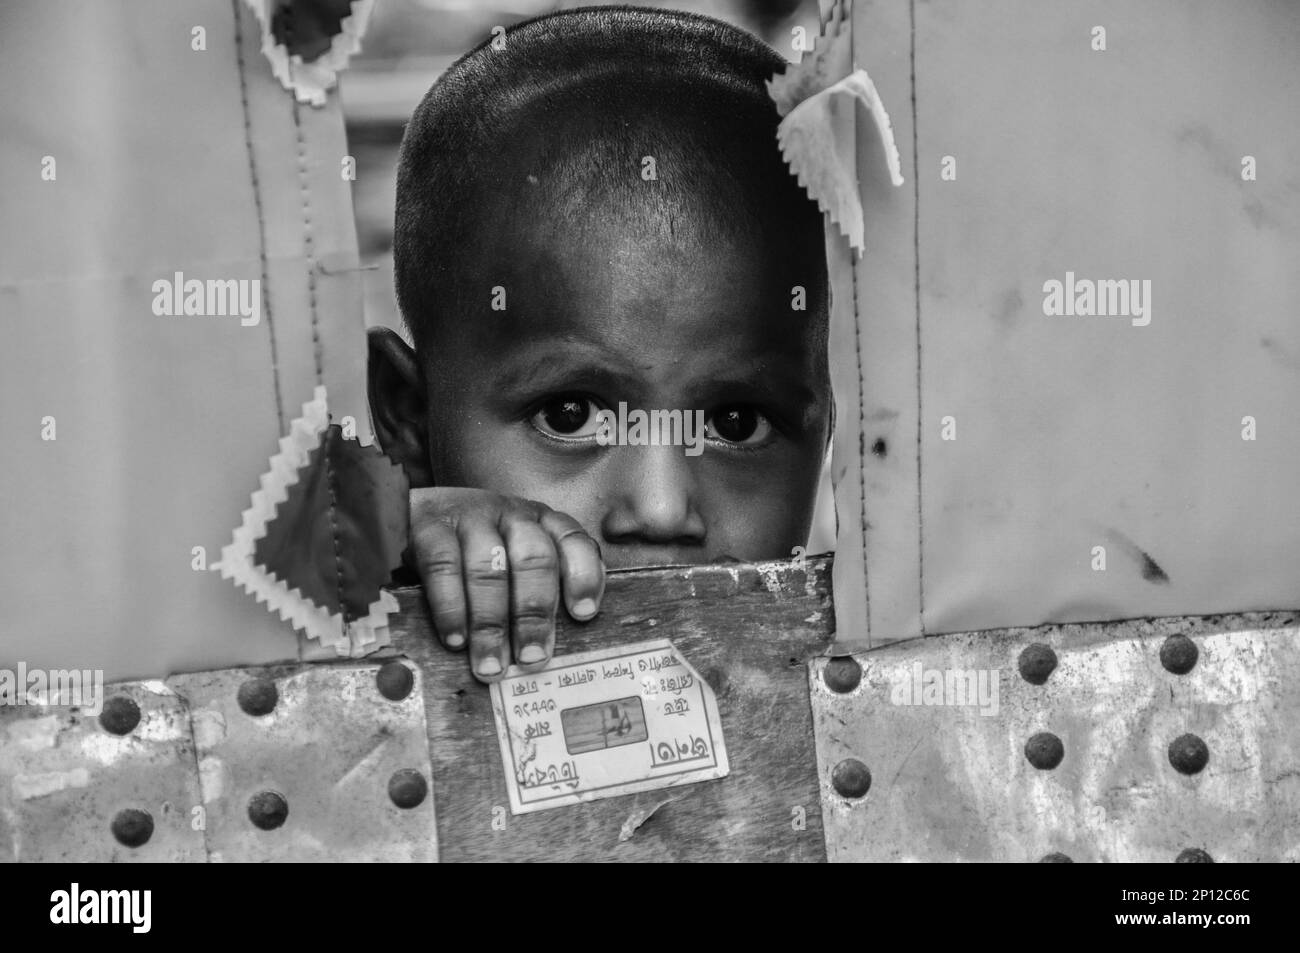 Portrait of underprivileged children in Bangladesh. Stock Photo